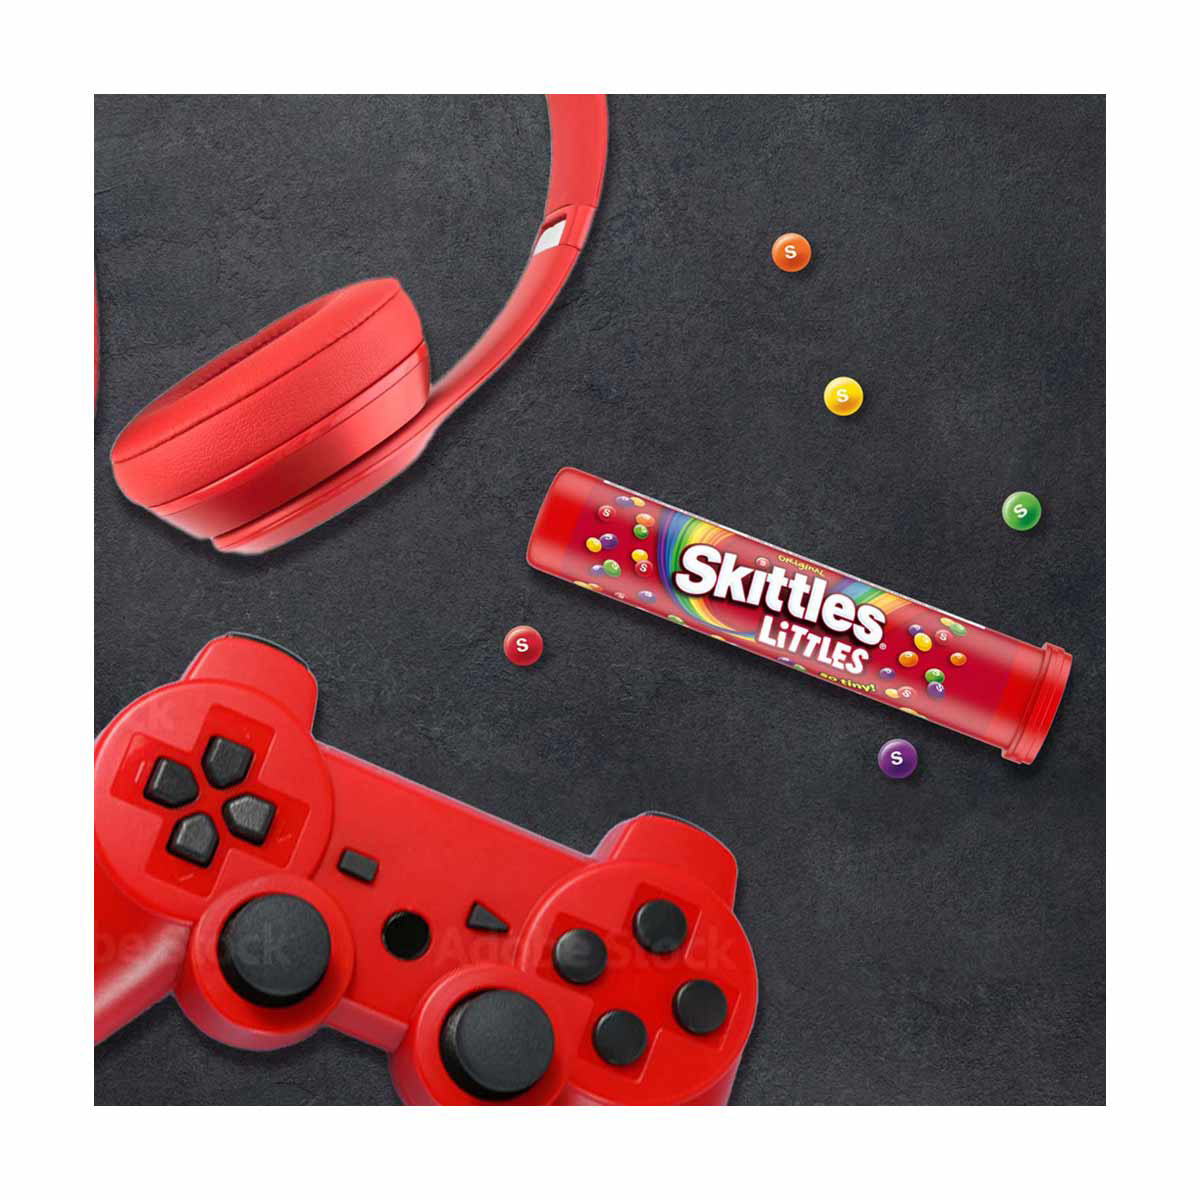 Skittles Original Littles Candy Tube